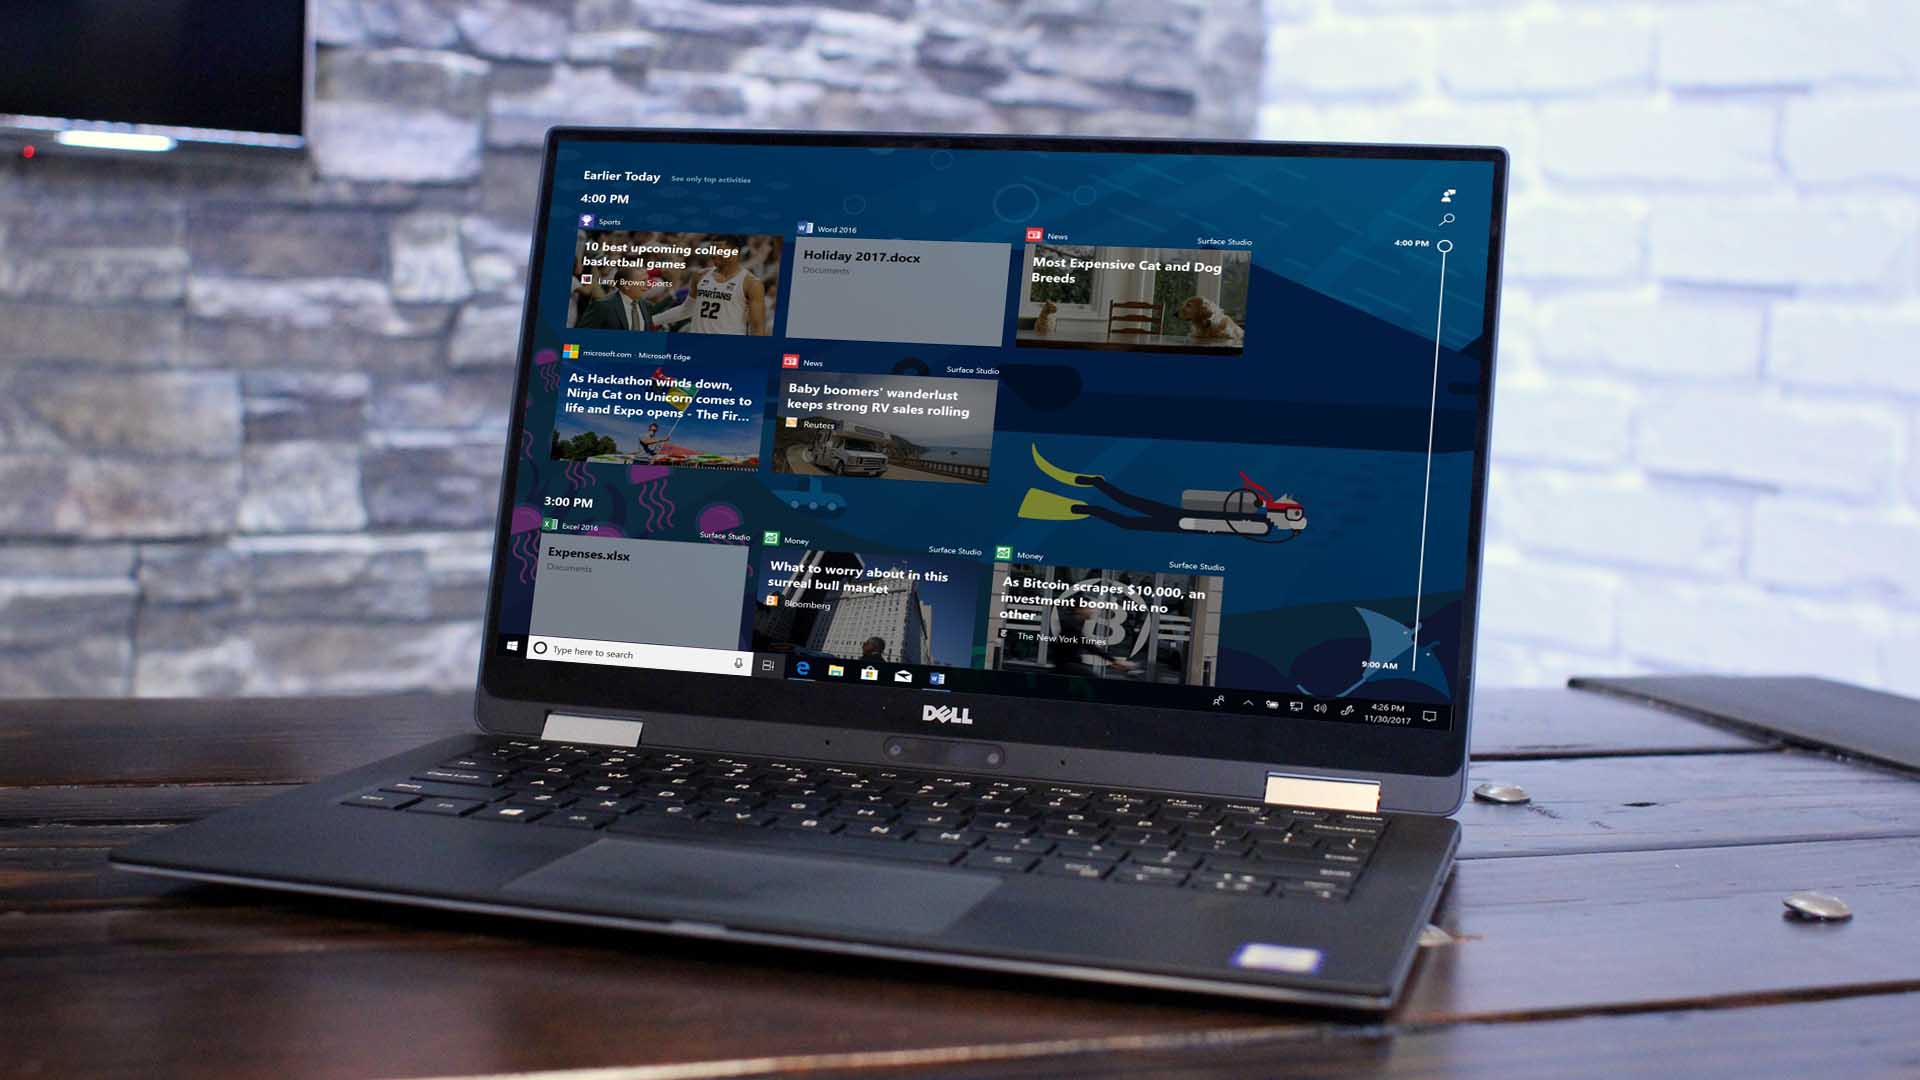 Microsoft chính thức phát hành bản cập nhật Windows 10 April 2018 vào thứ Hai, 30/4